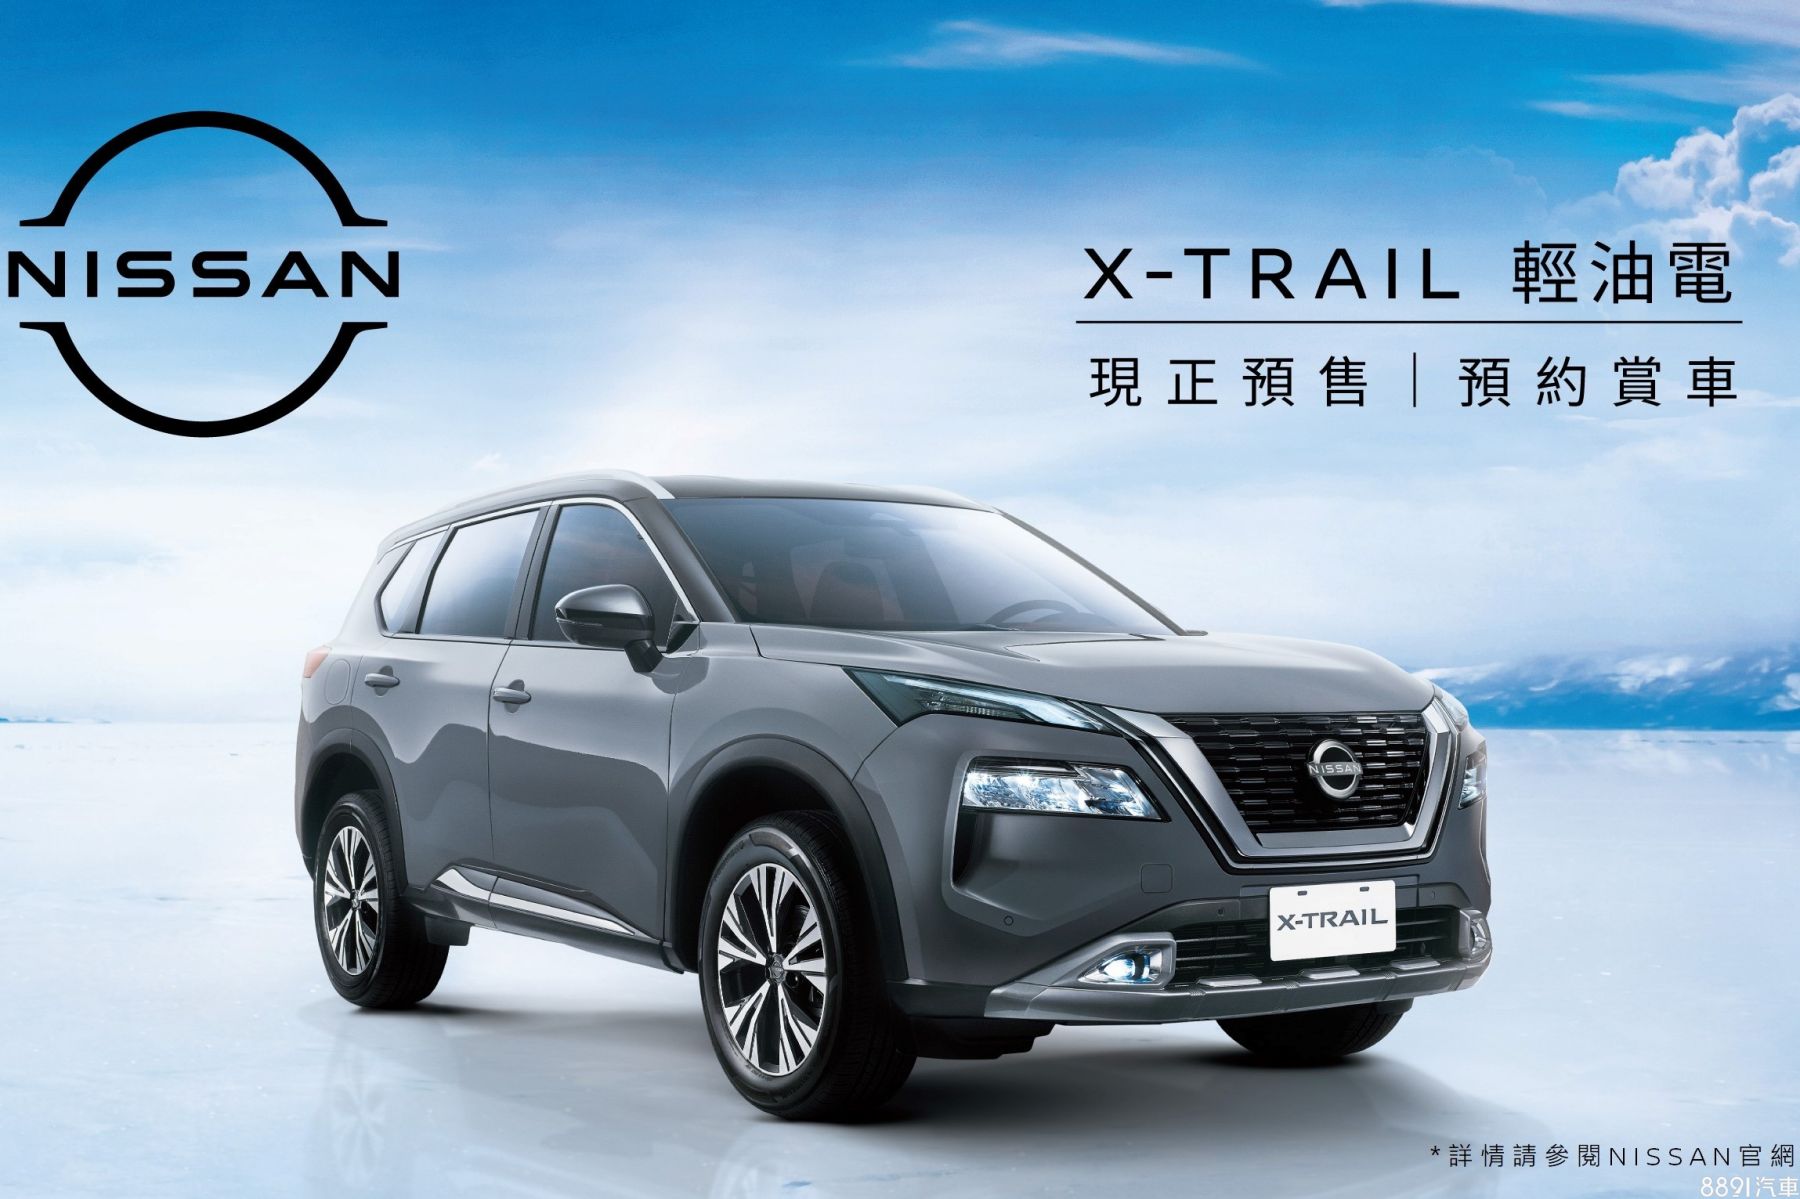 國產Nissan X-Trail輕油電預售起跑3車型106.9萬起-8891汽車